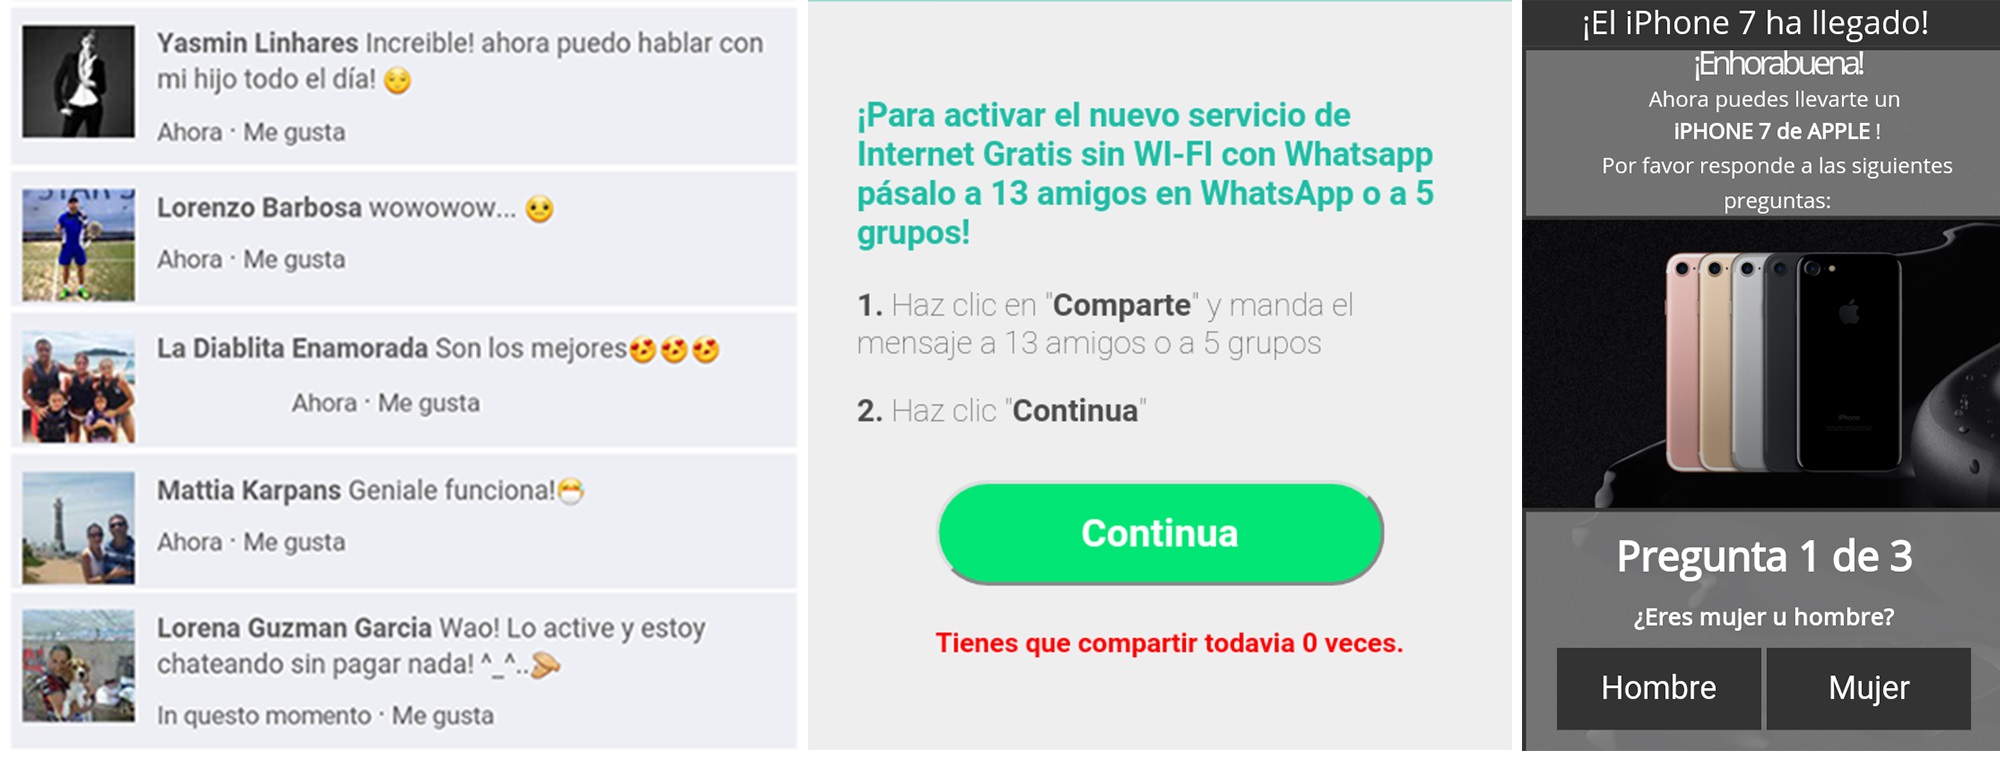 Estafa Whatsapp con Internet gratis